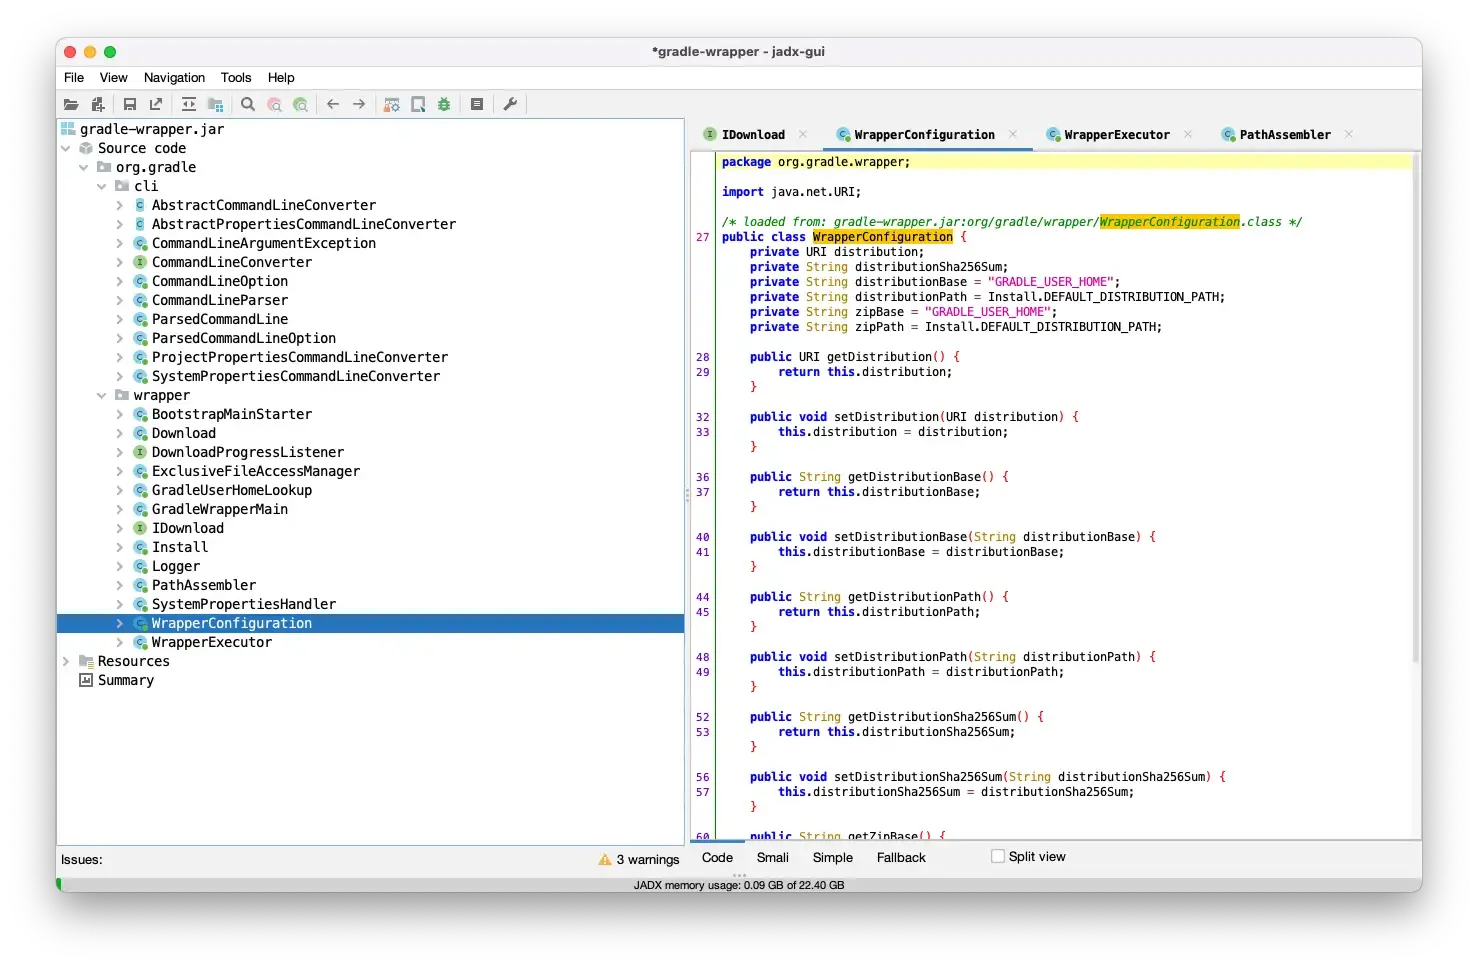 Image showing JADX program with decompiled gradle-wrapper.jar code